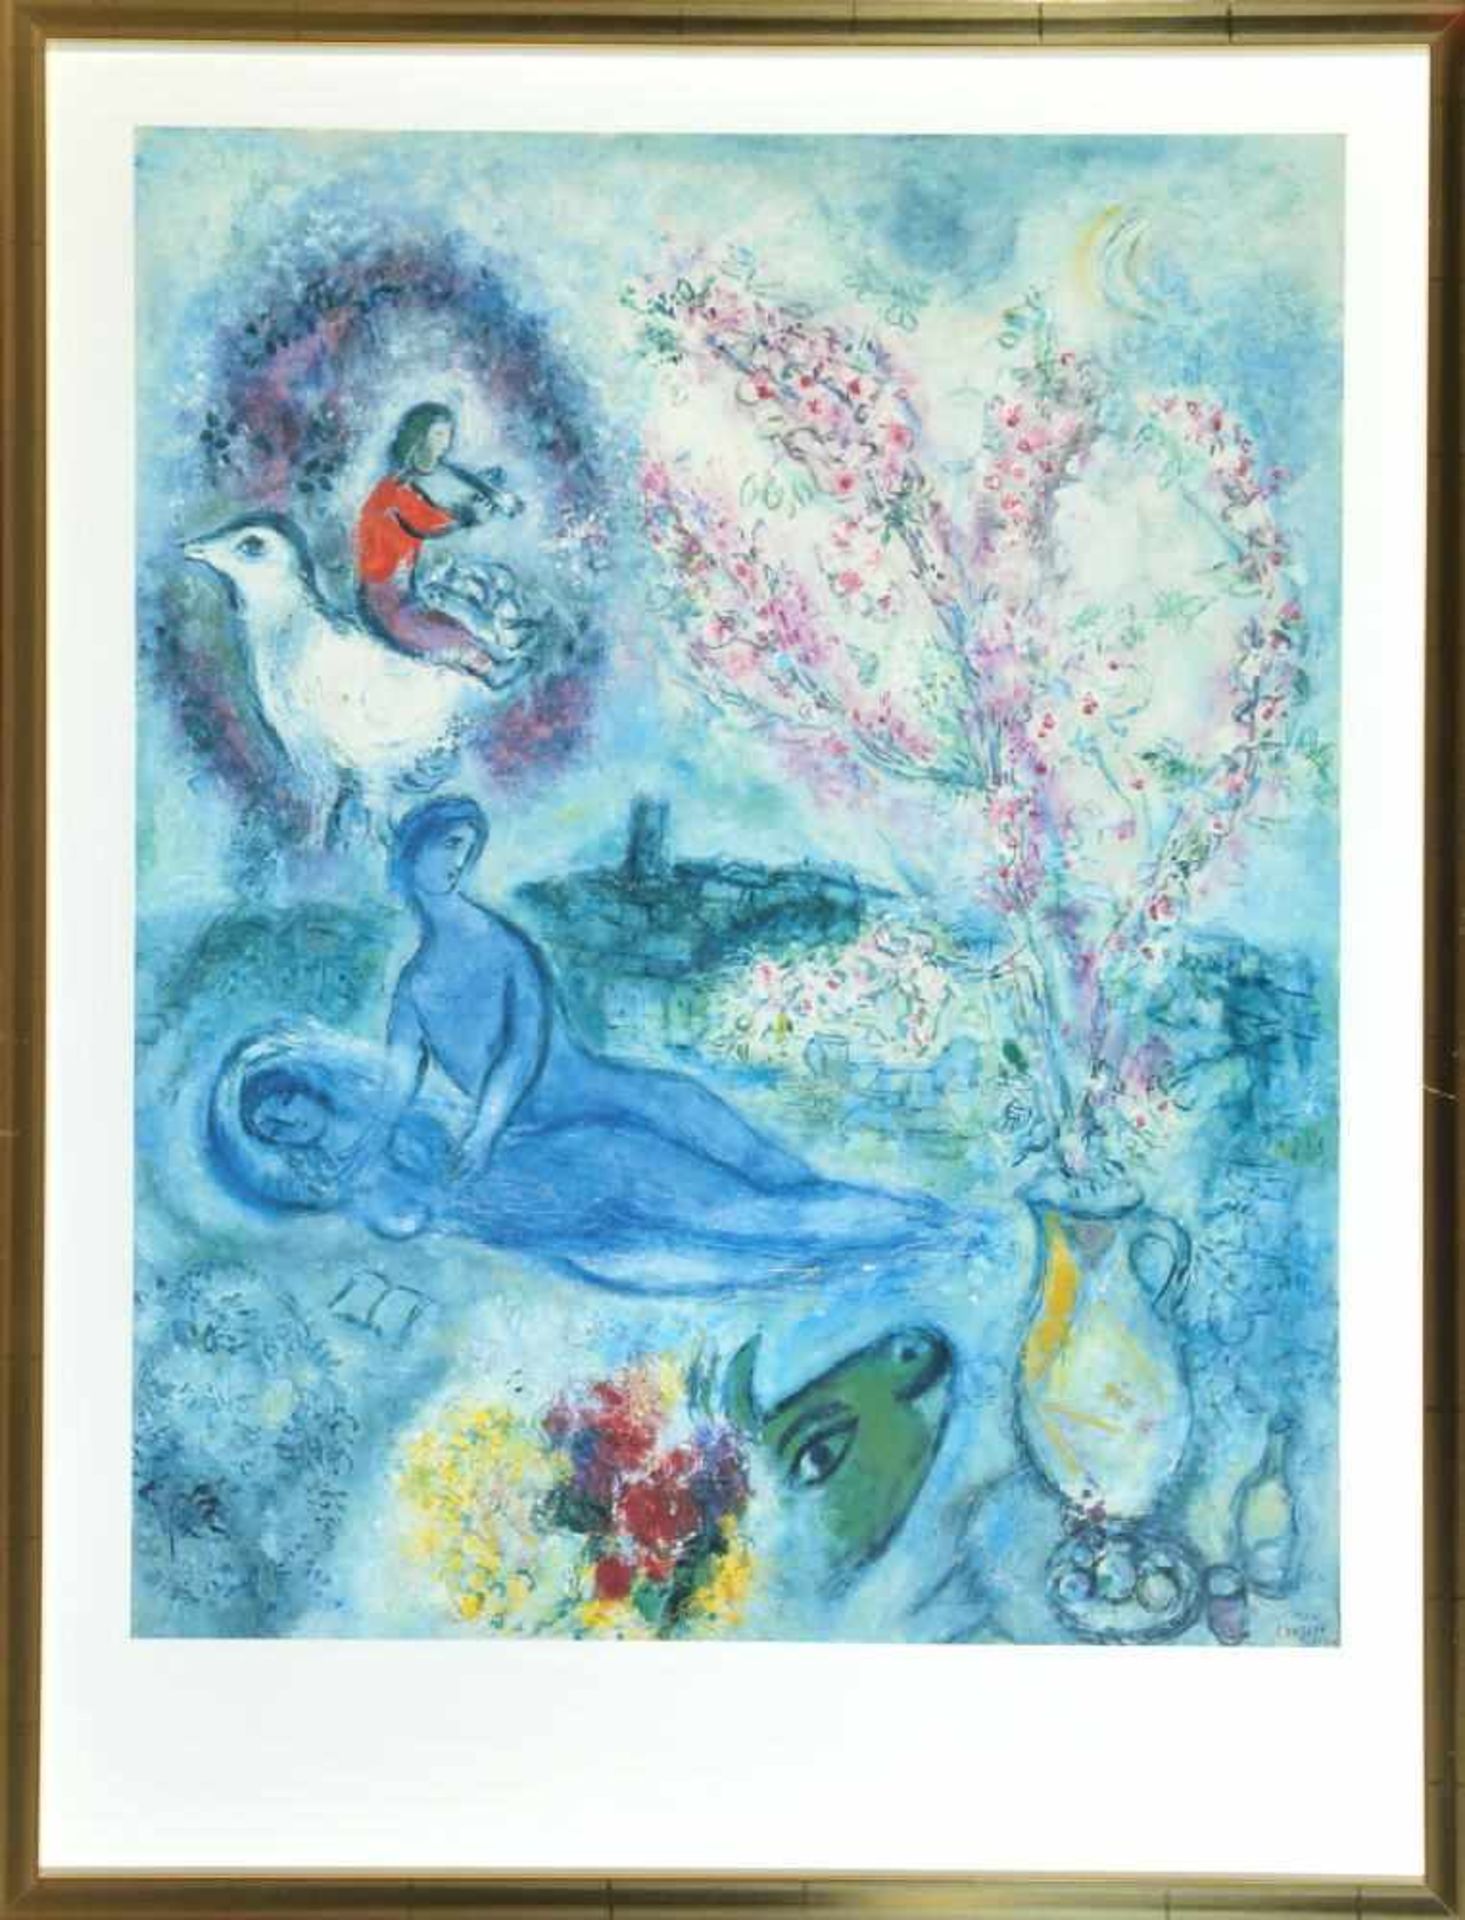 Chagall, Marc, 1887 Vitebsk - 1985 Saint-Paul-de-VenceFarbserigraphie, 65 x 52 cm, " Les